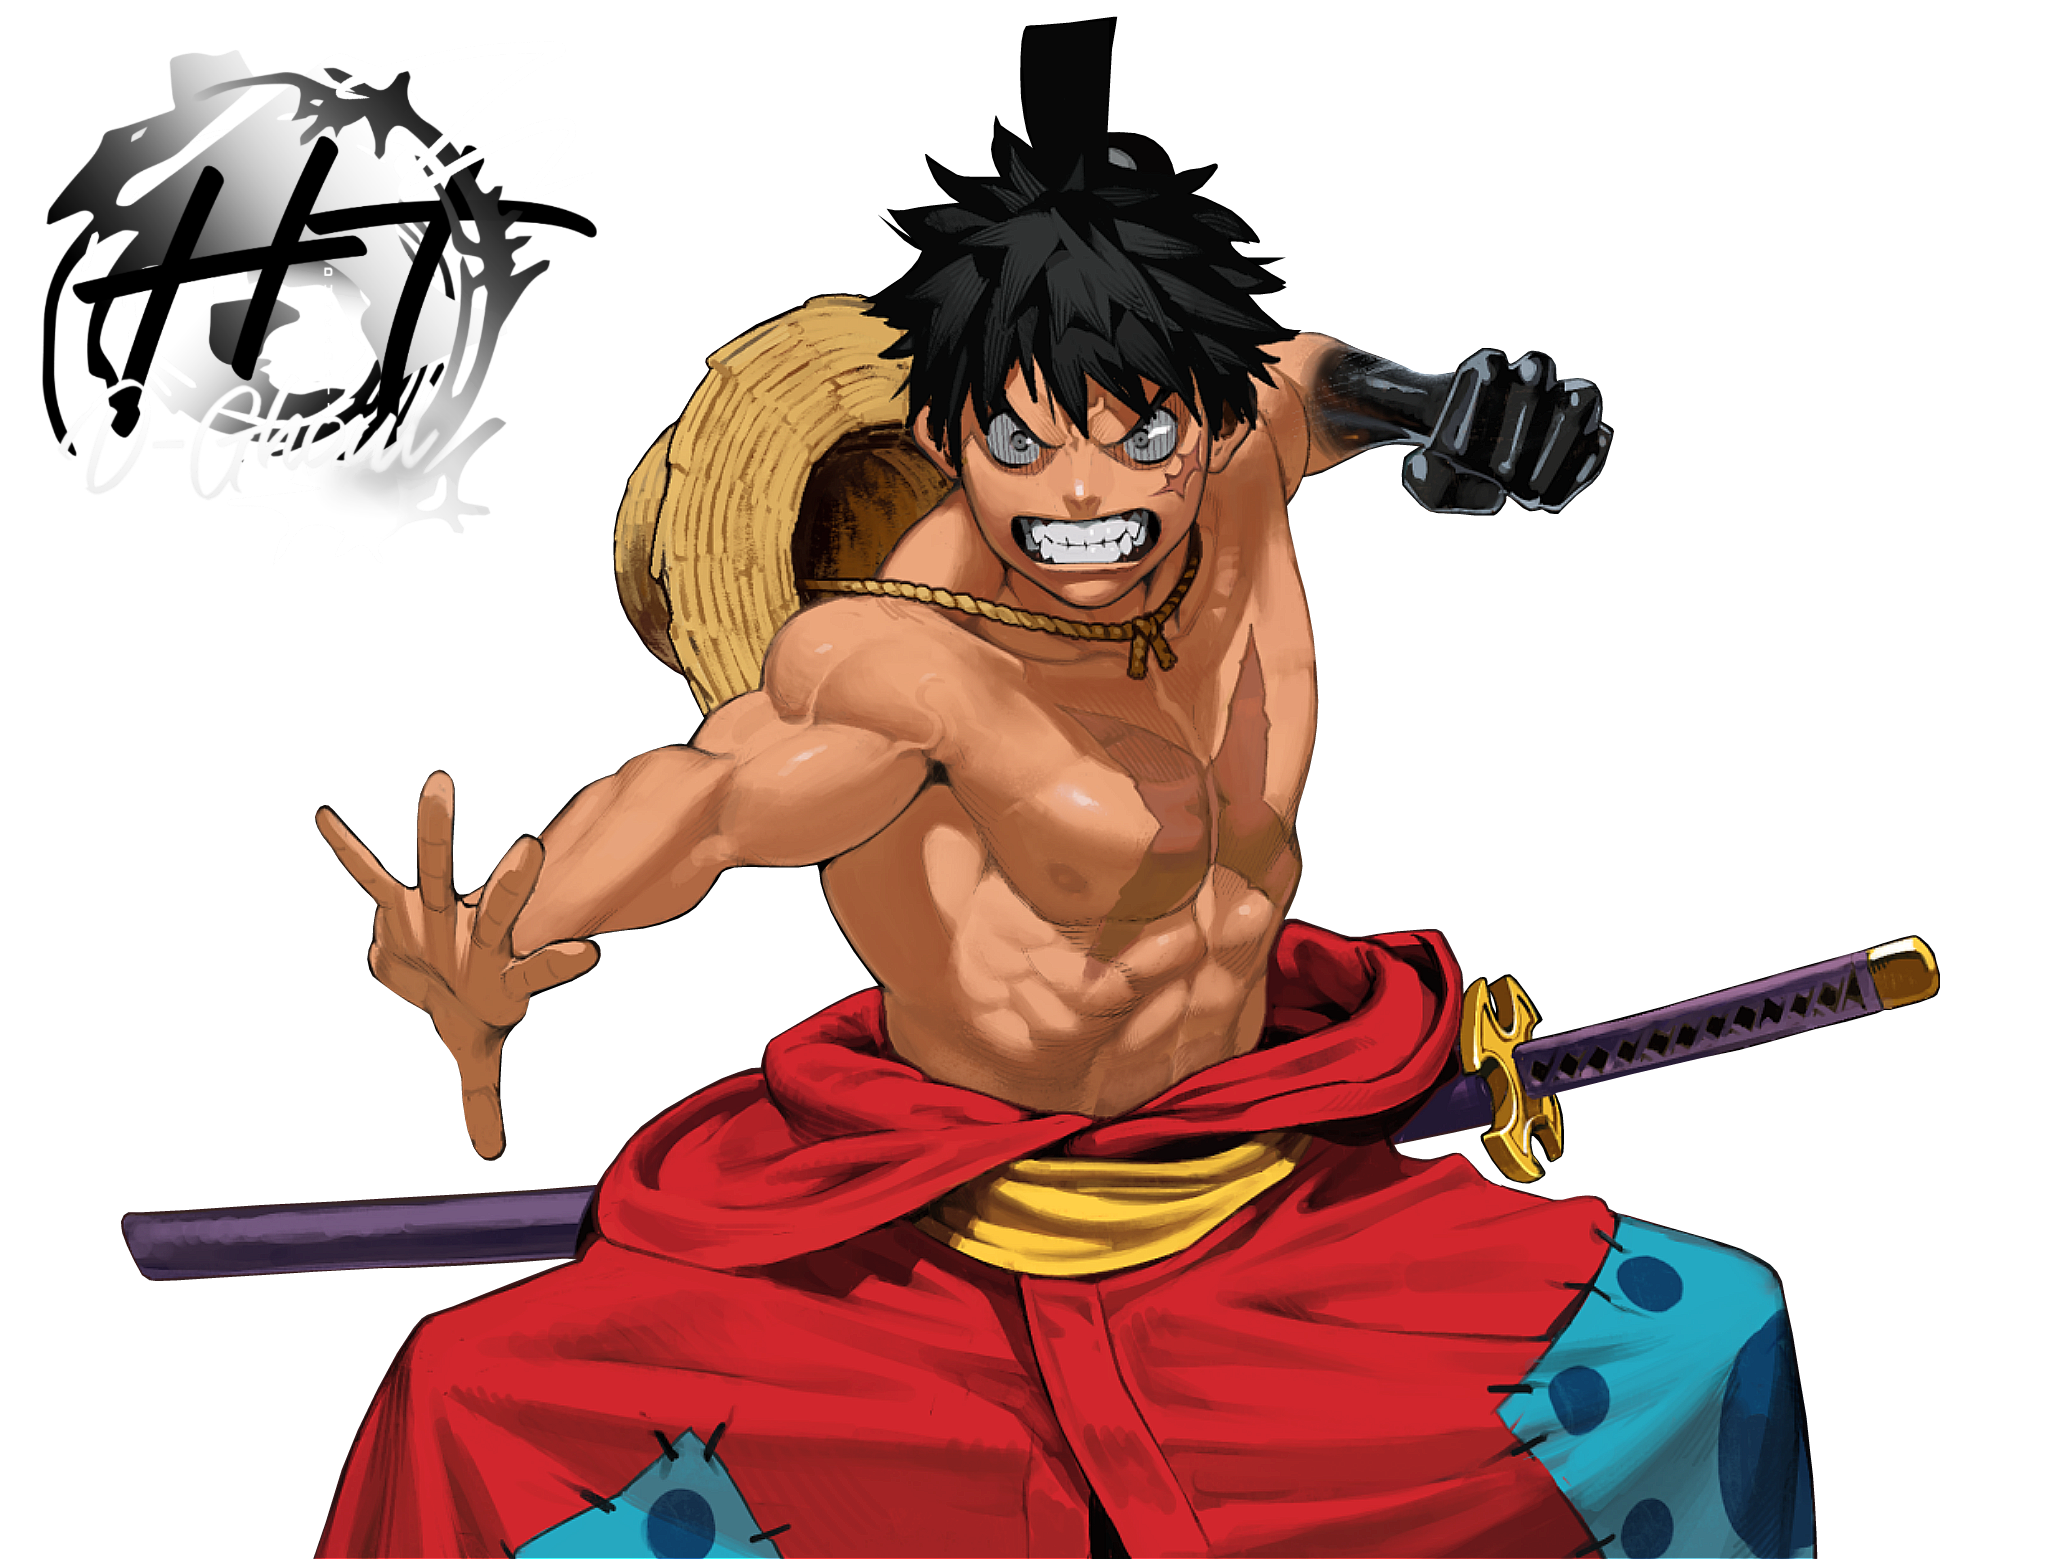 Luffy x Zoro (OP Wano Arc) - Render by D4rkawaii on DeviantArt